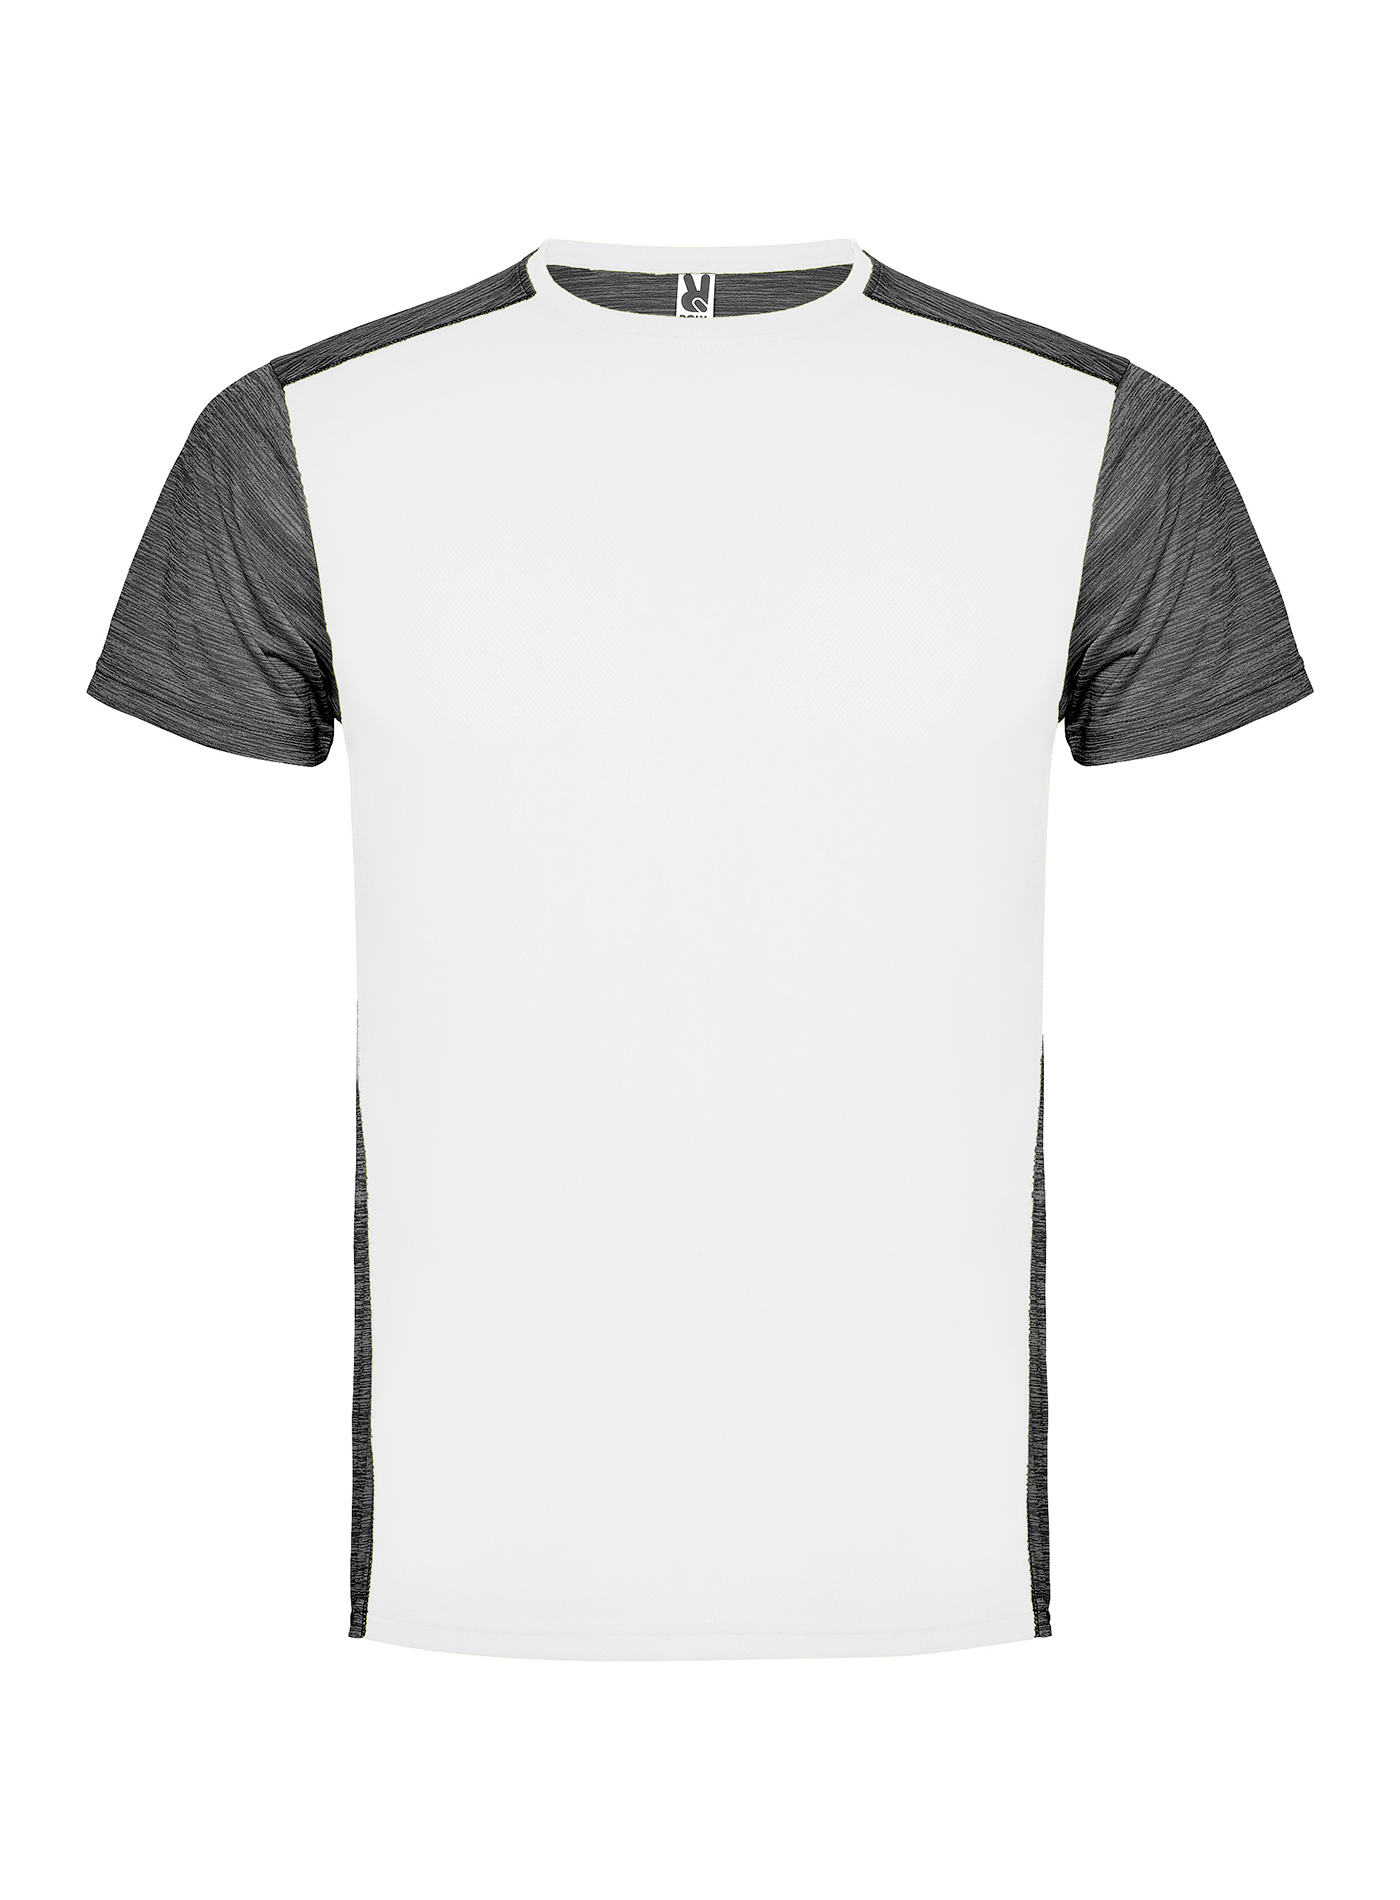 Pánské/Dětské sportovní tričko Roly Zolder - Bílá a tmavě šedý melír L